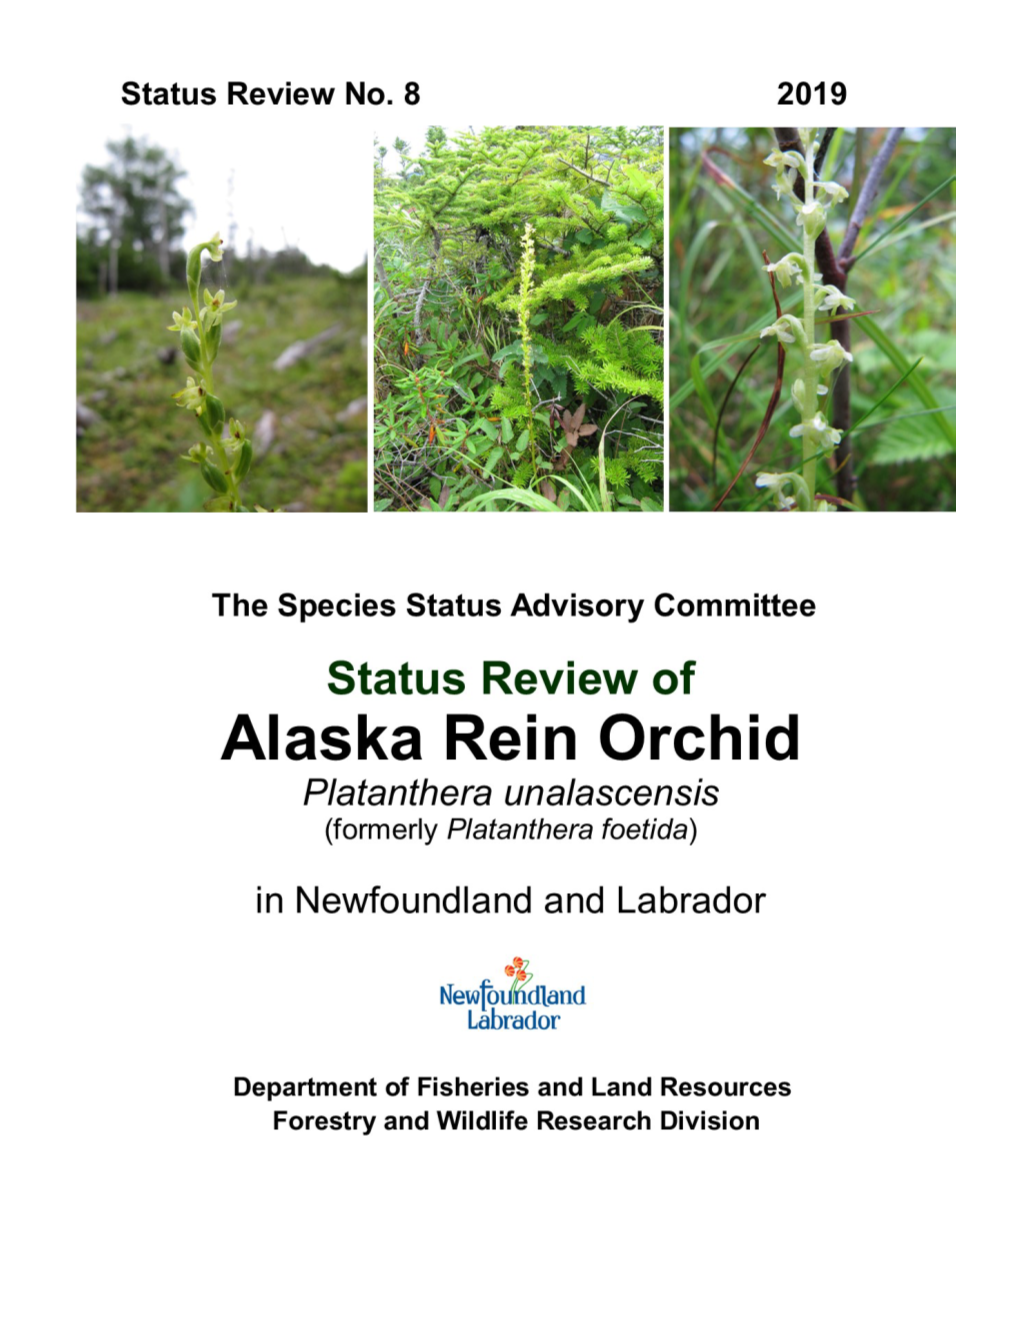 Alaska Rein Orchid Re-Assessment